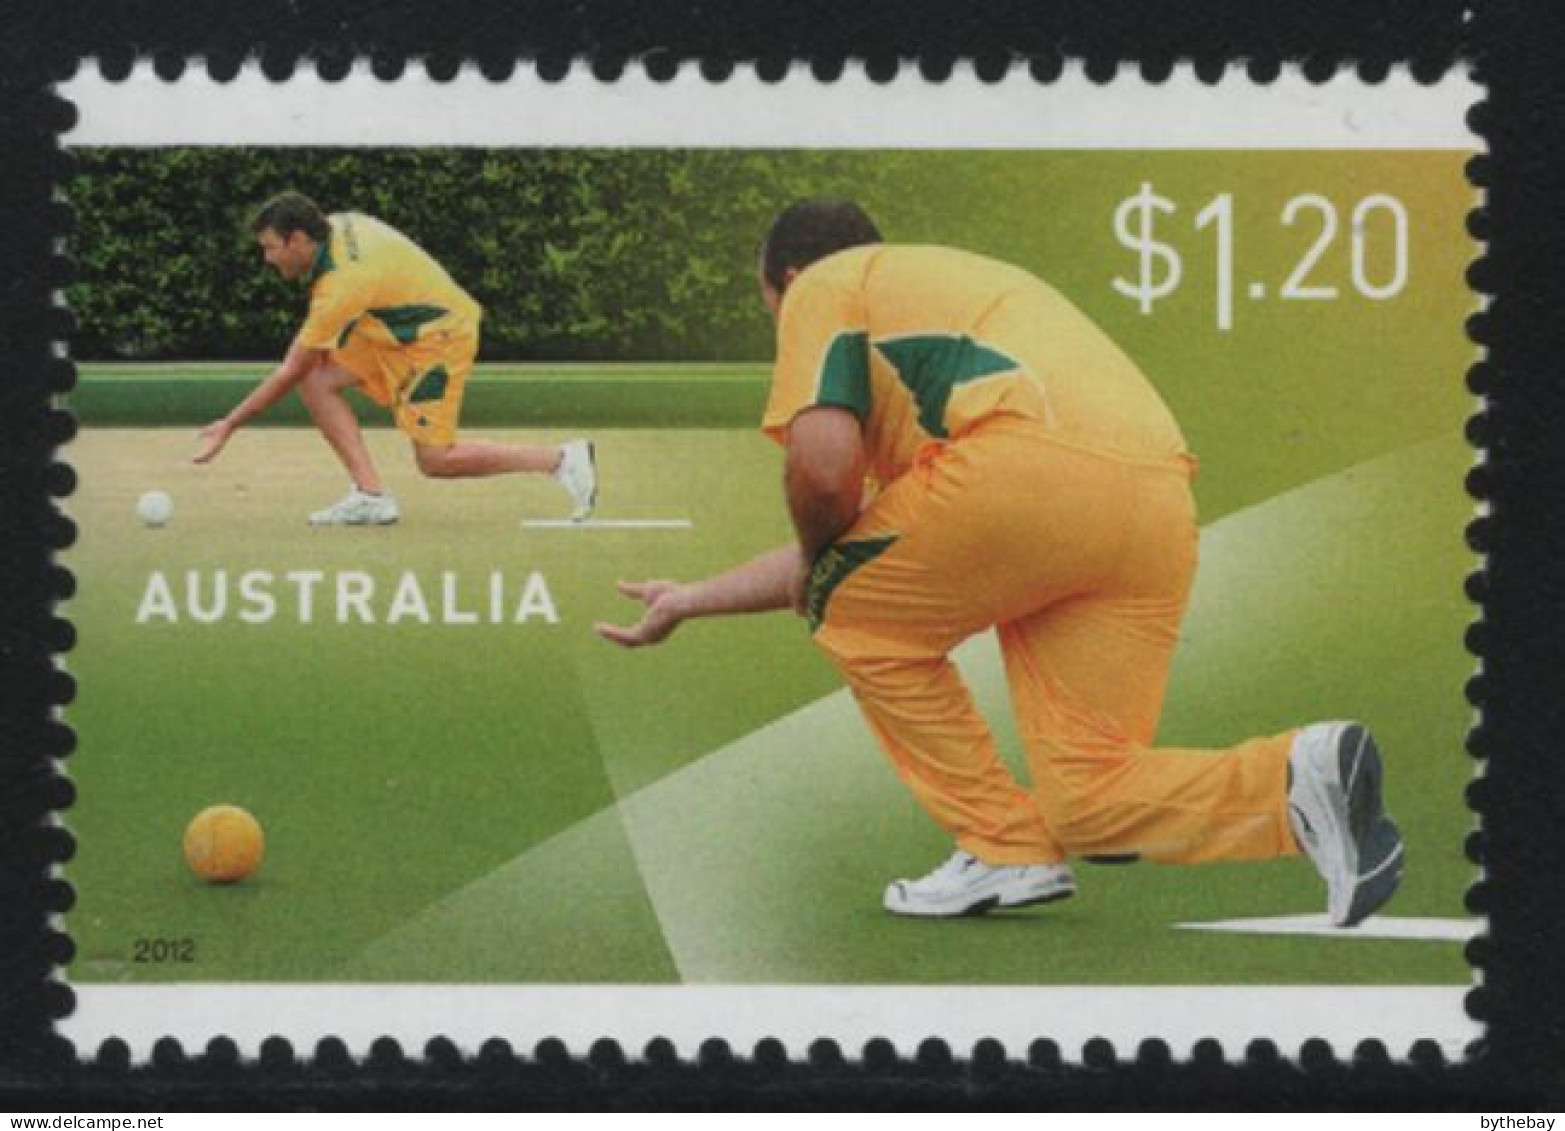 Australia 2012 MNH Sc 3805 $1.20 Male Lawn Bowlers - Mint Stamps